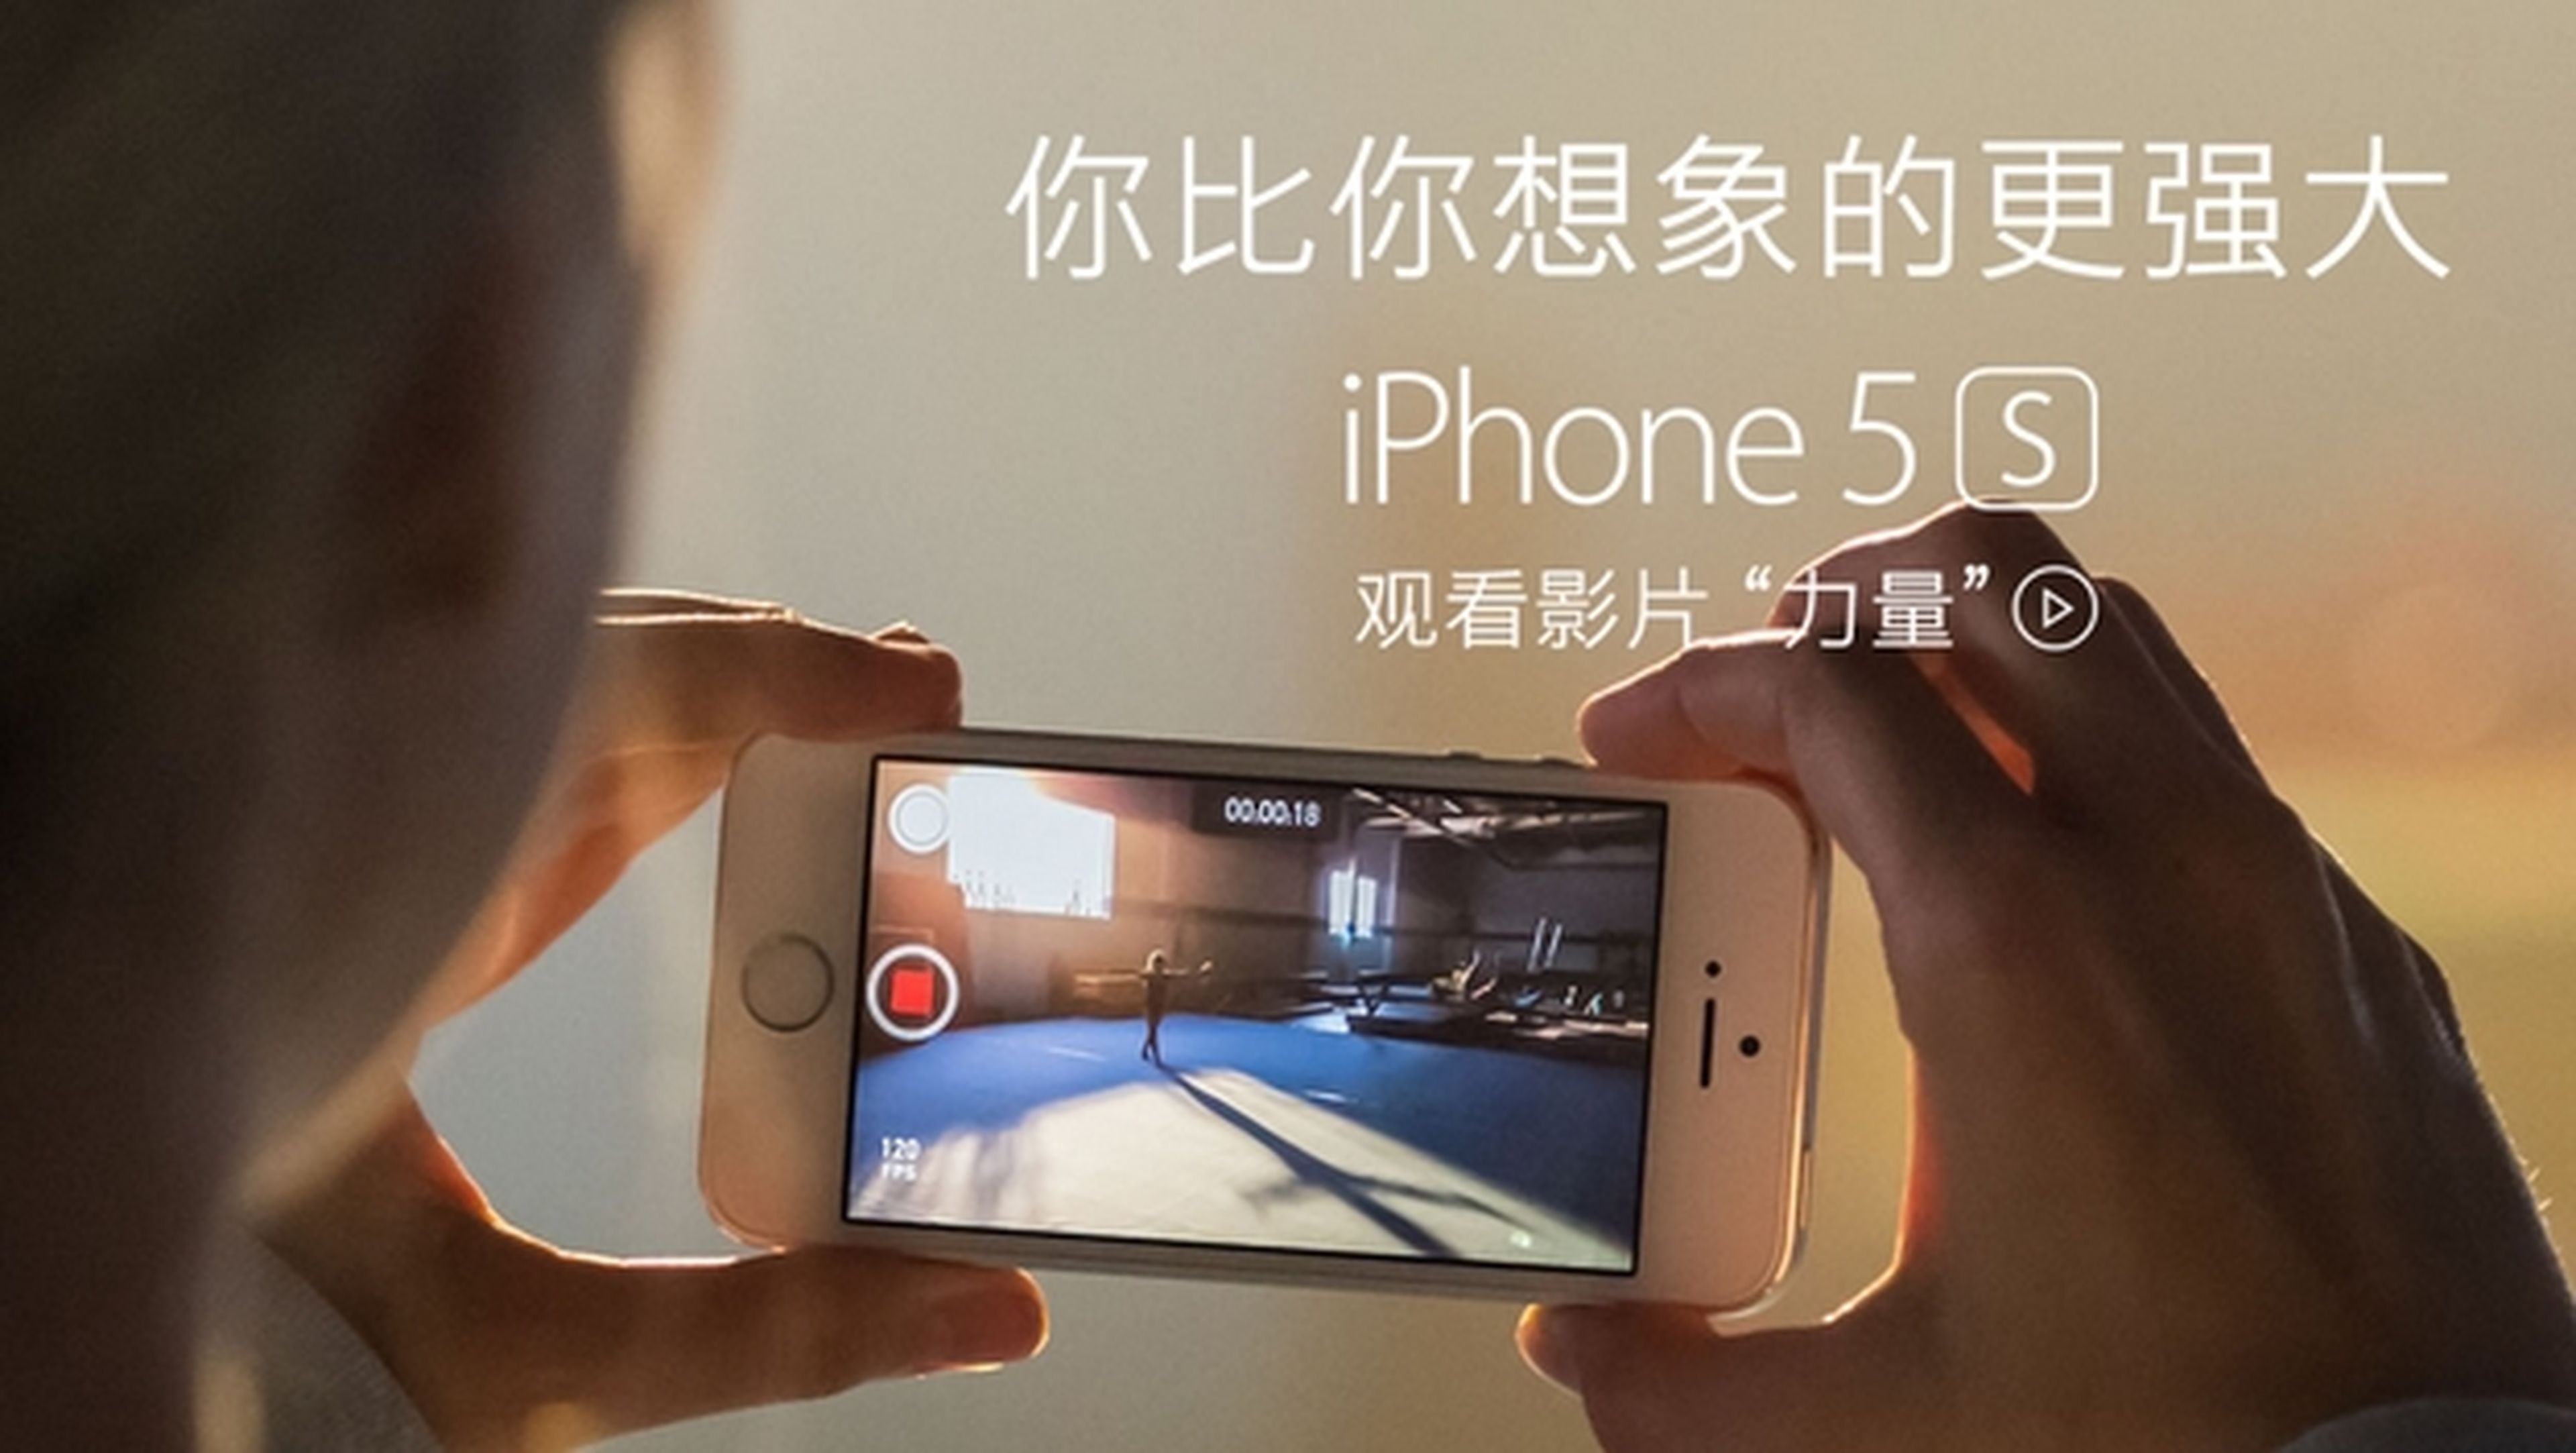 Apple rechaza las acusaciones de espionaje por parte de China.